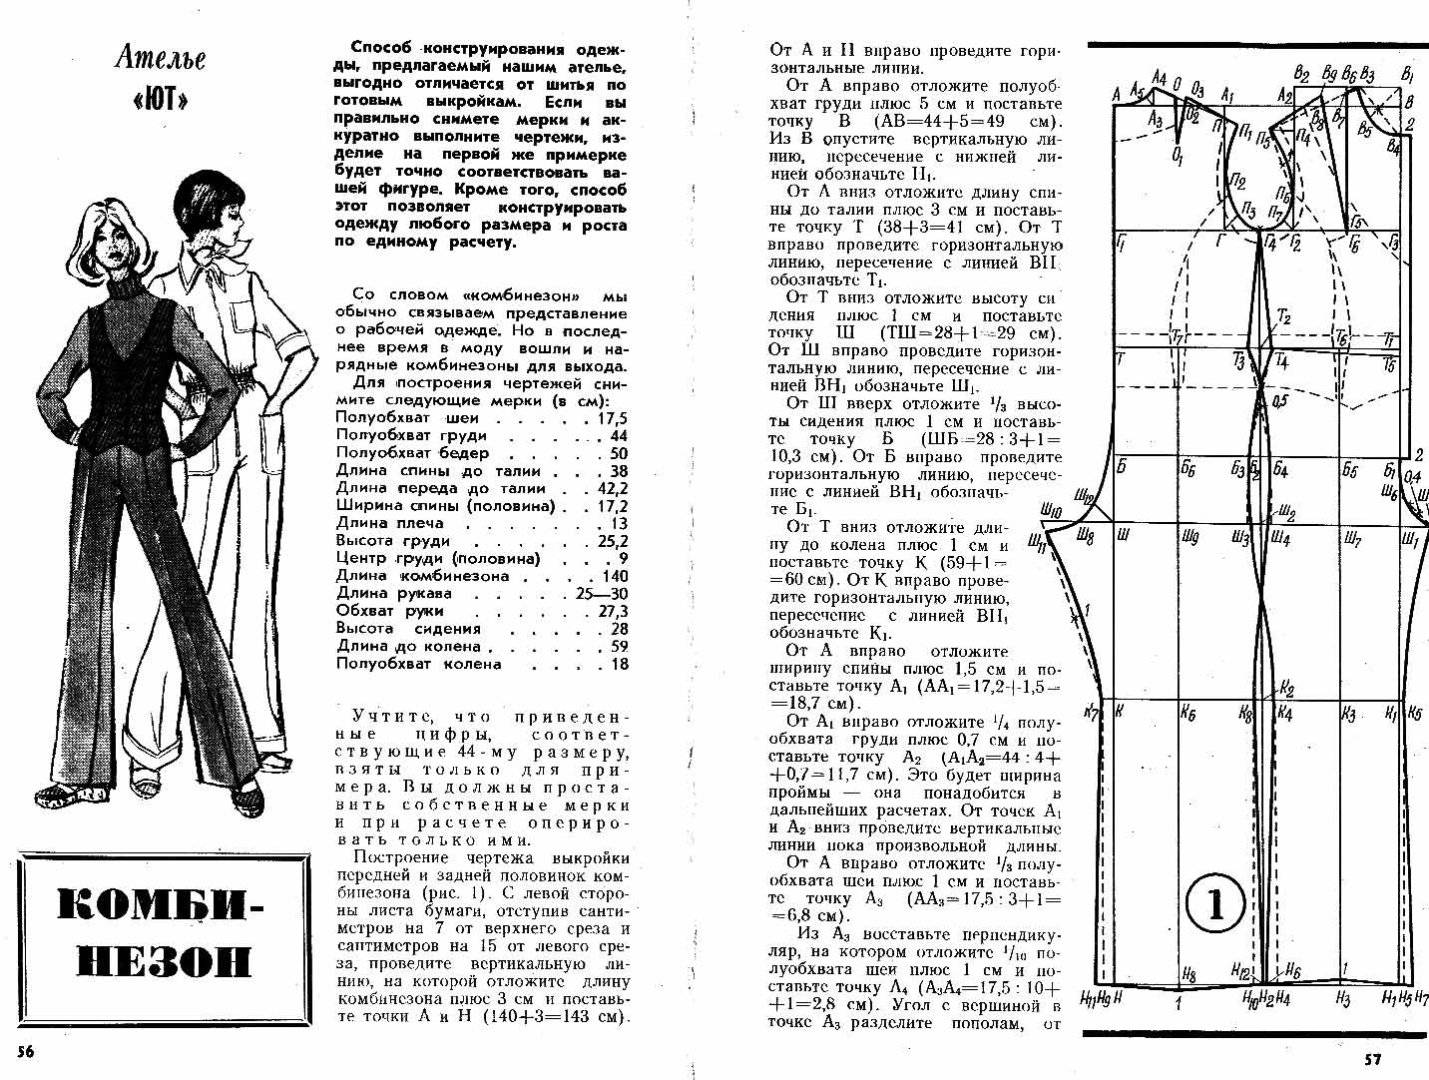 Простая выкройка и инструкция по пошиву мужского рабочего комбинезона